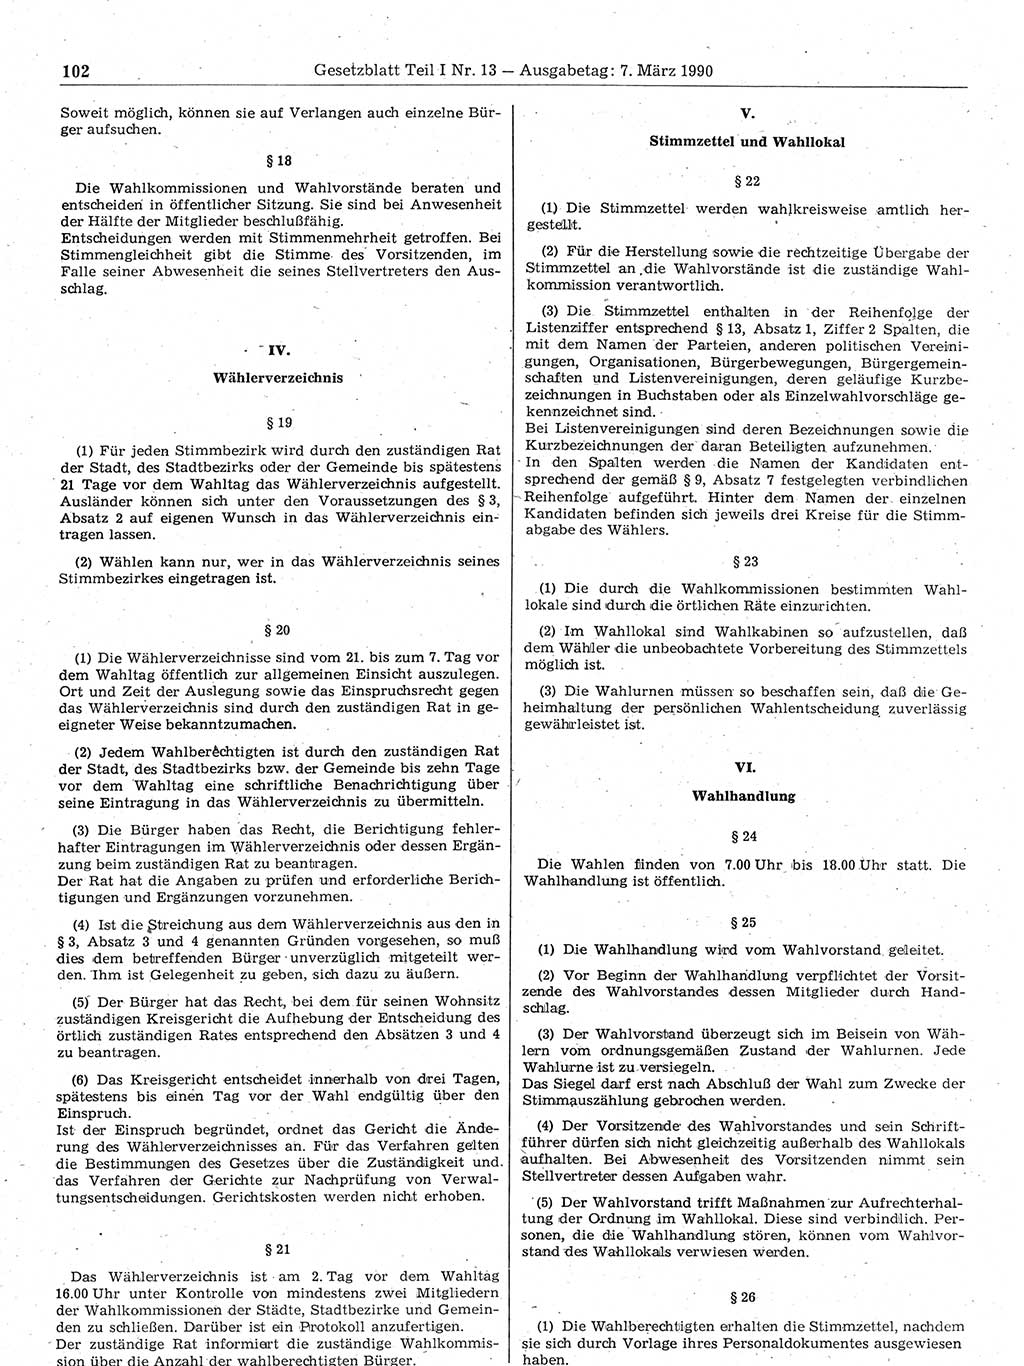 Gesetzblatt (GBl.) der Deutschen Demokratischen Republik (DDR) Teil Ⅰ 1990, Seite 102 (GBl. DDR Ⅰ 1990, S. 102)